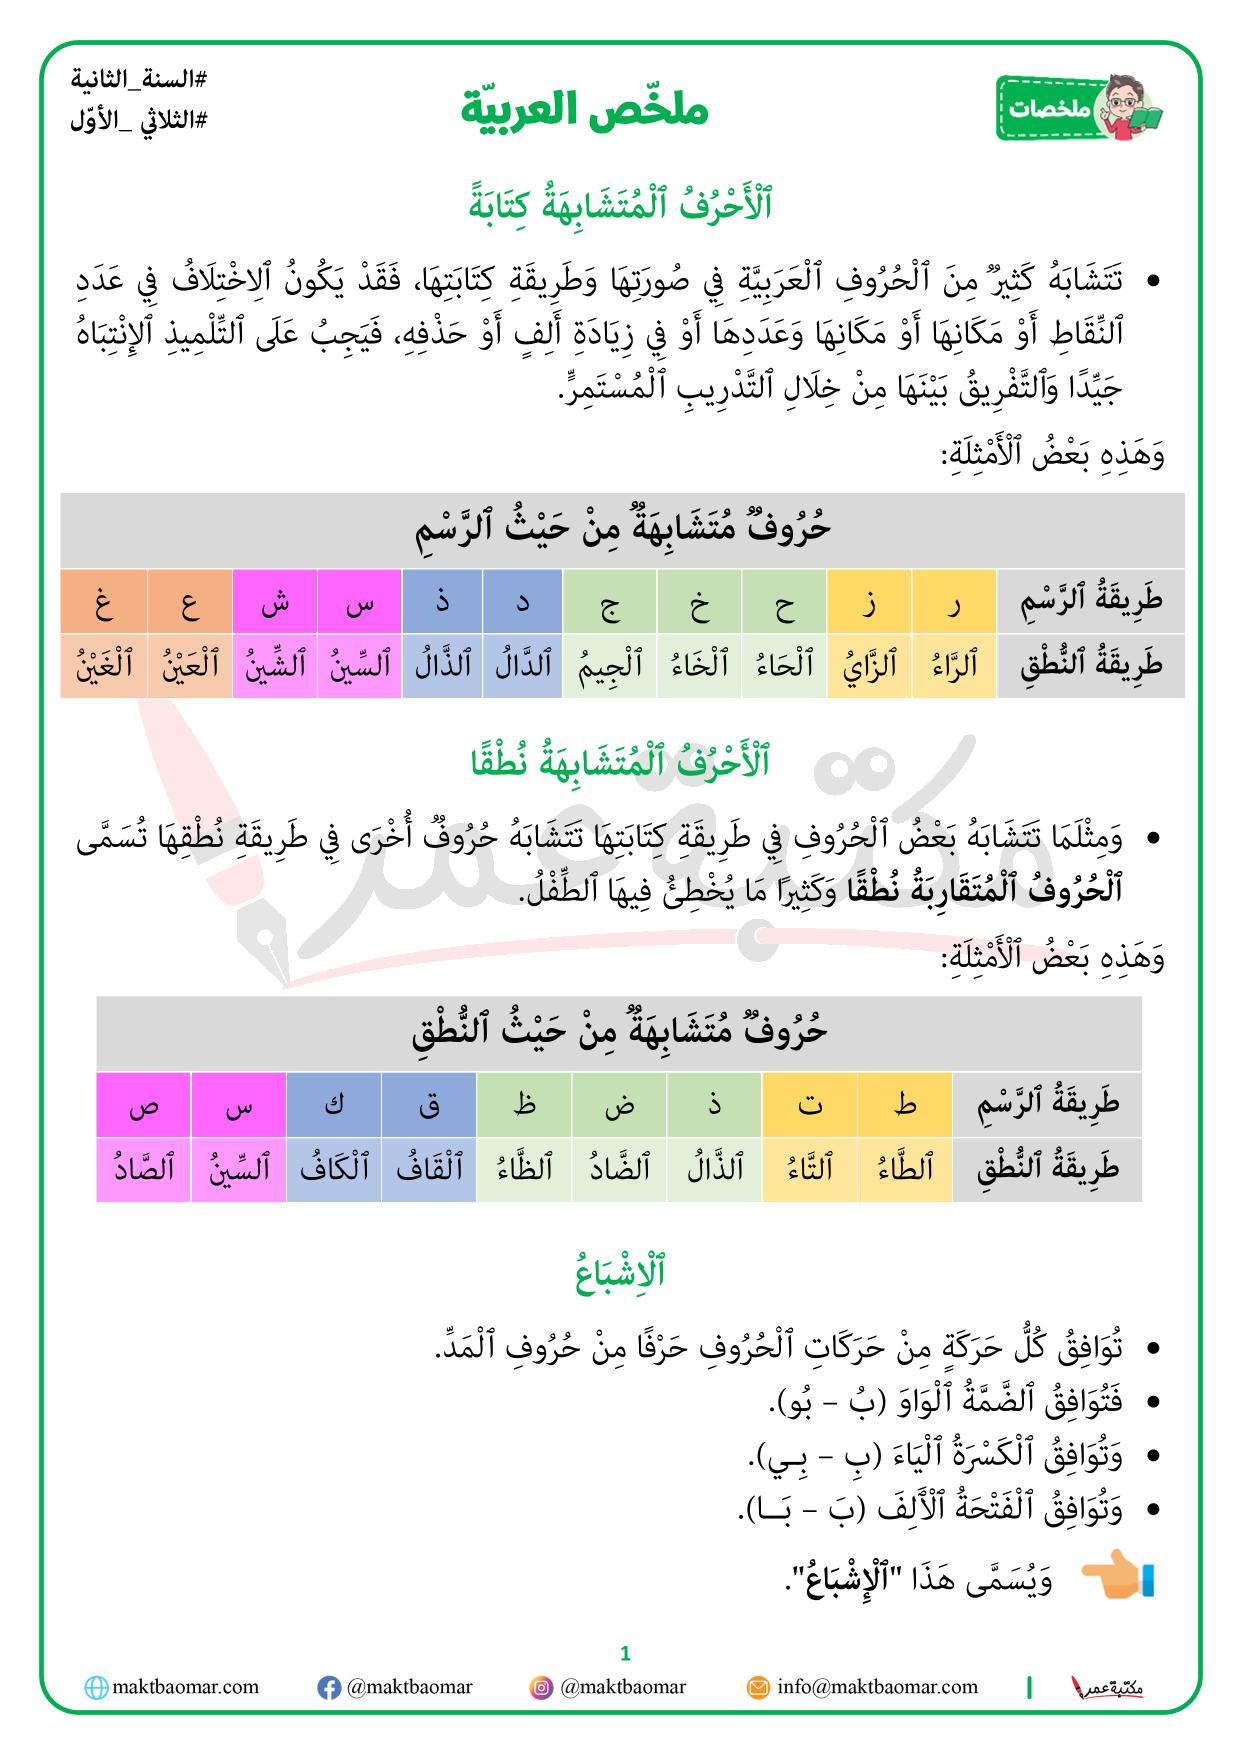 ملخص دروس العربية-1